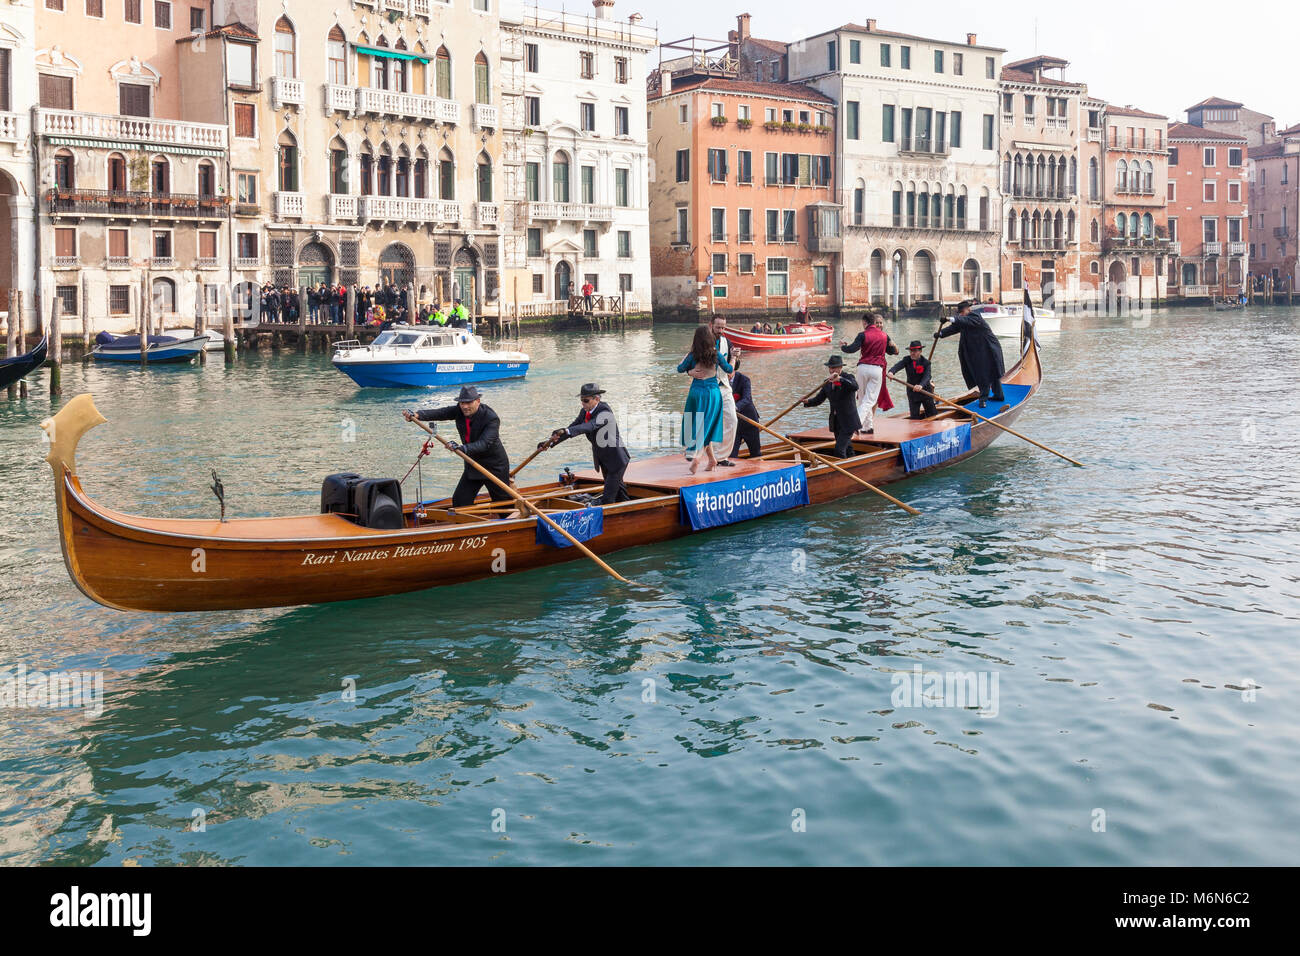 Eine Gondel, die Tango Tänzer auf dem Canal Grande, Santa Croce, Venedig, Venetien, Italien während der vor-Karneval regatta, Festa sull'Acqua, auf einem Nebelhaften Stockfoto